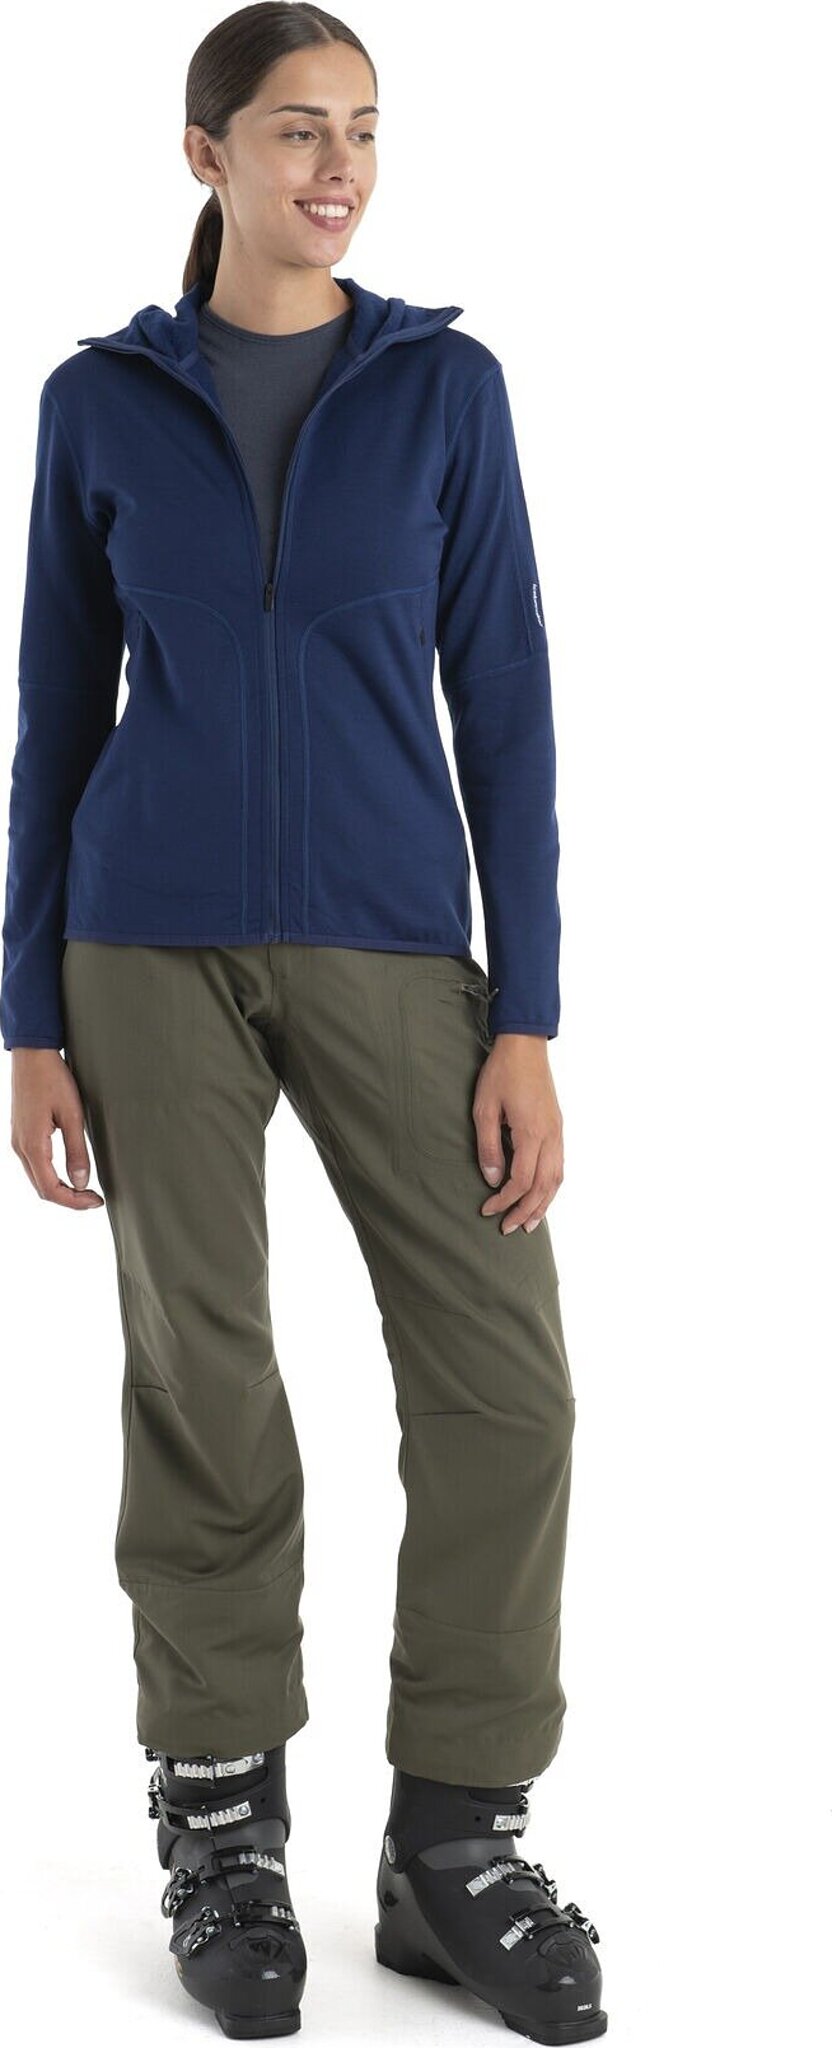 Women's Merino 560 RealFleece™ Elemental II Long Sleeve Zip Jacket